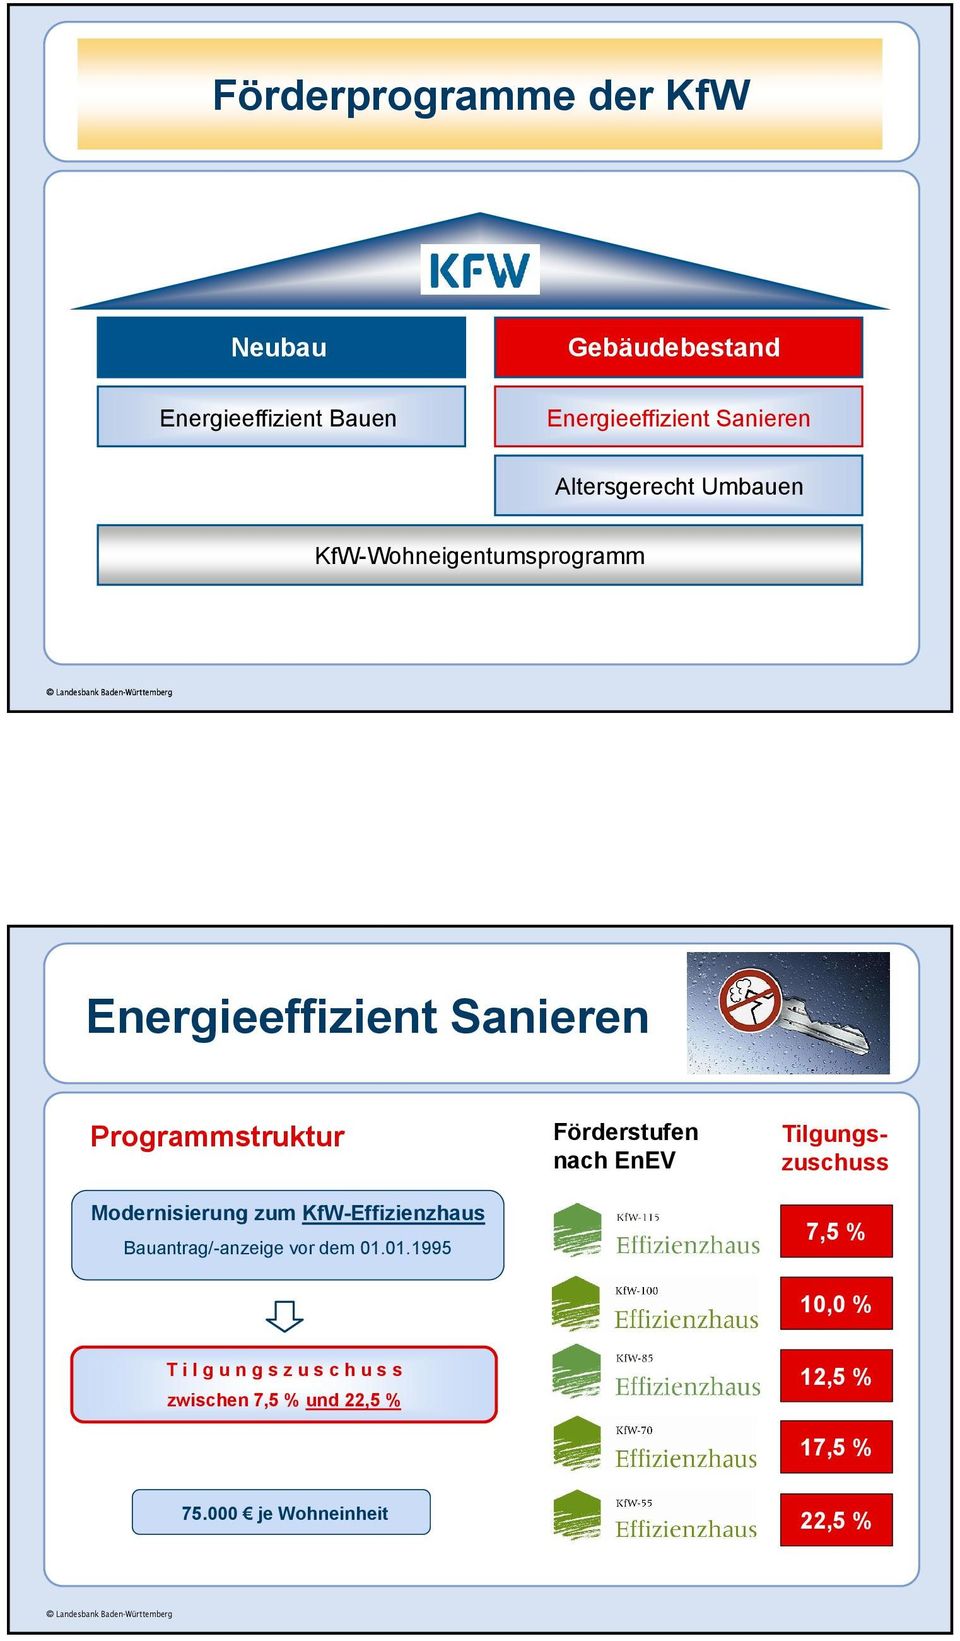 Programmstruktur Modernisierung zum KfW-Effizienzhaus Bauantrag/-anzeige vor dem 01.